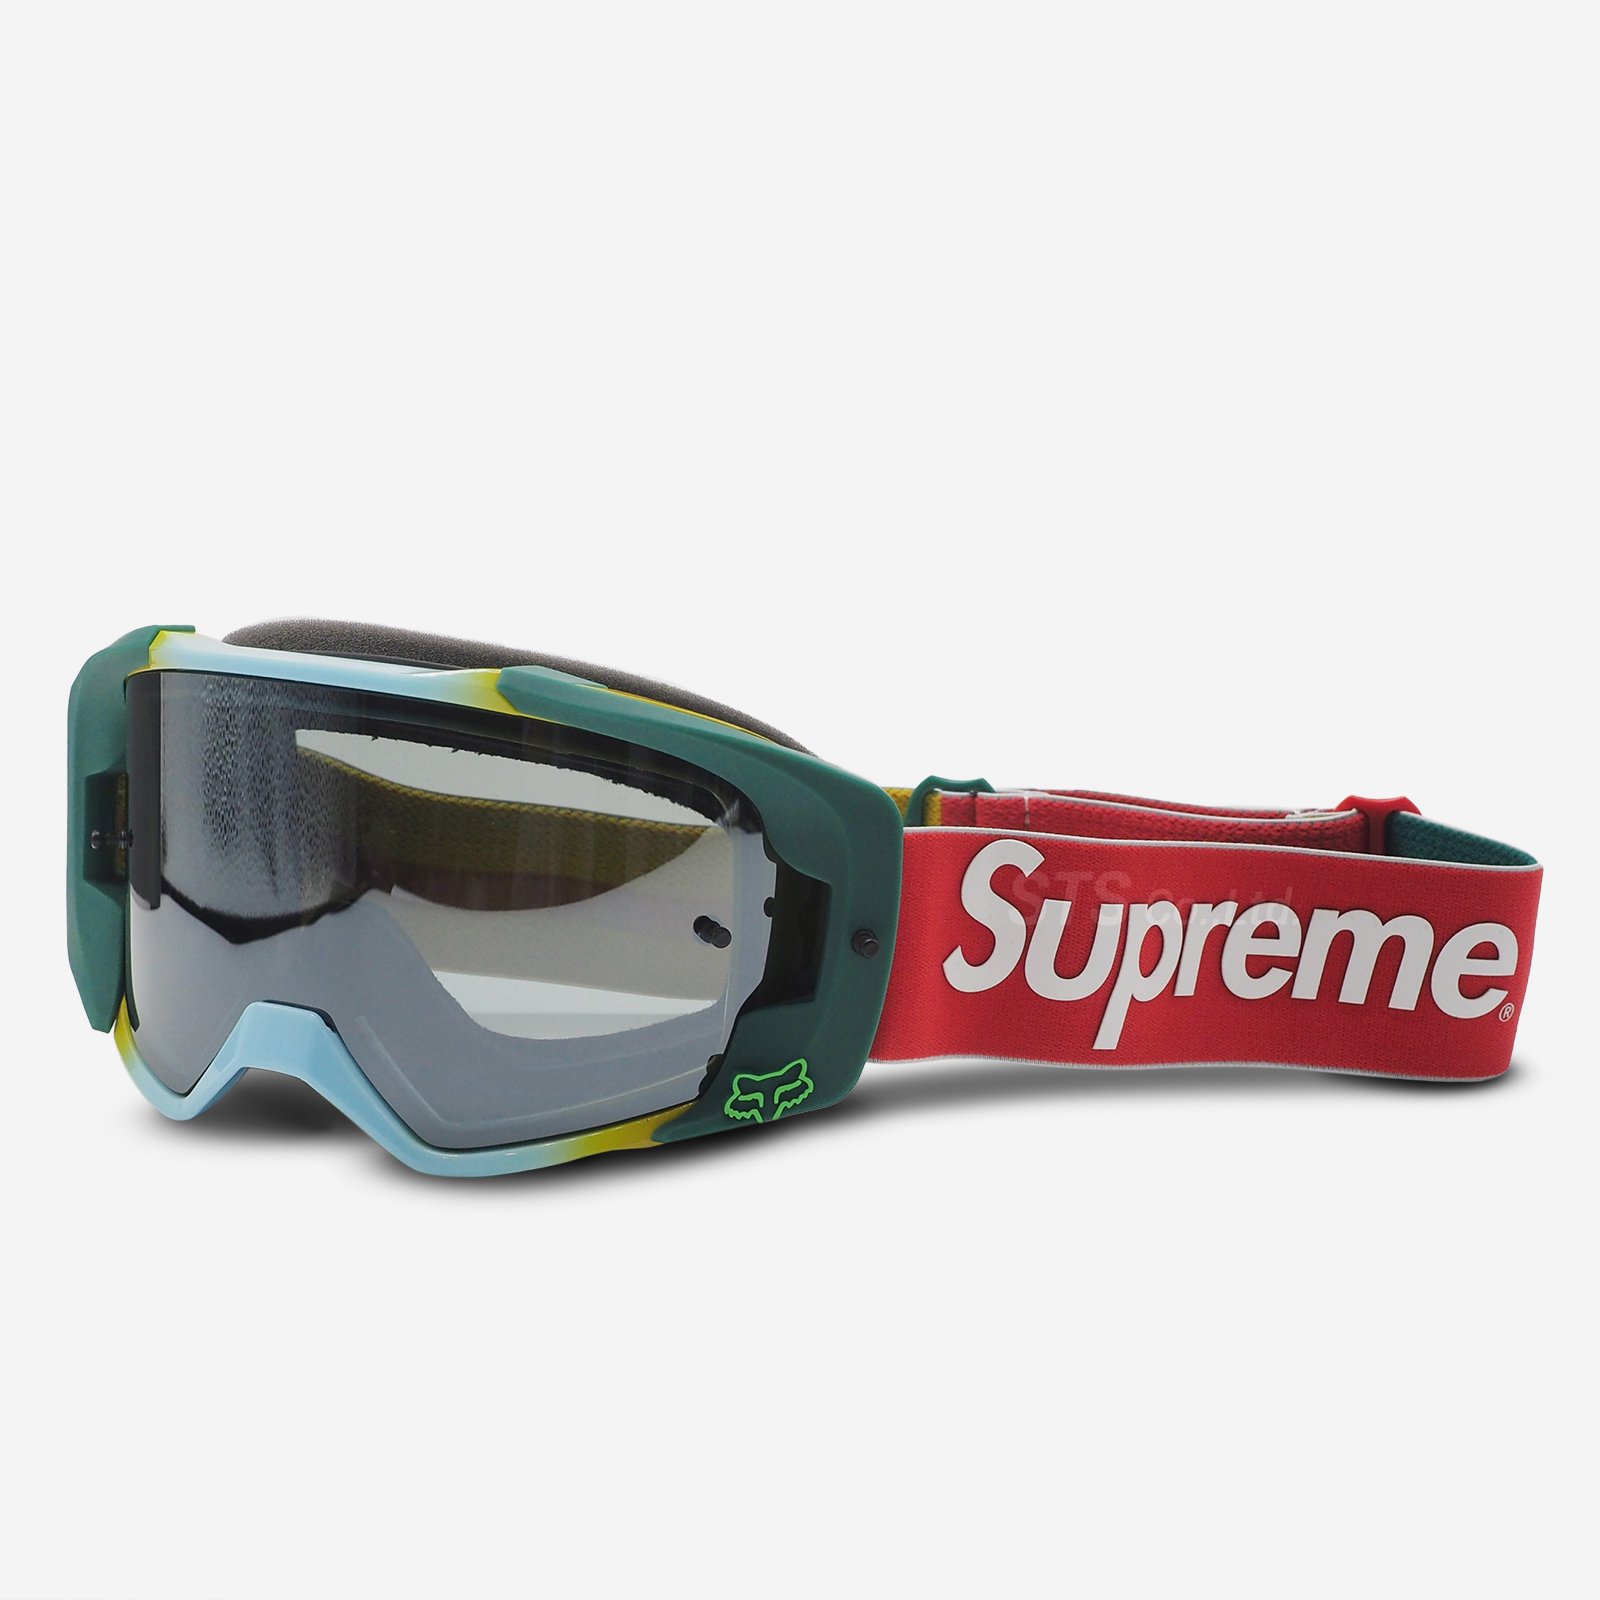 Supreme /Honda  Fox  Racing Vue Goggles